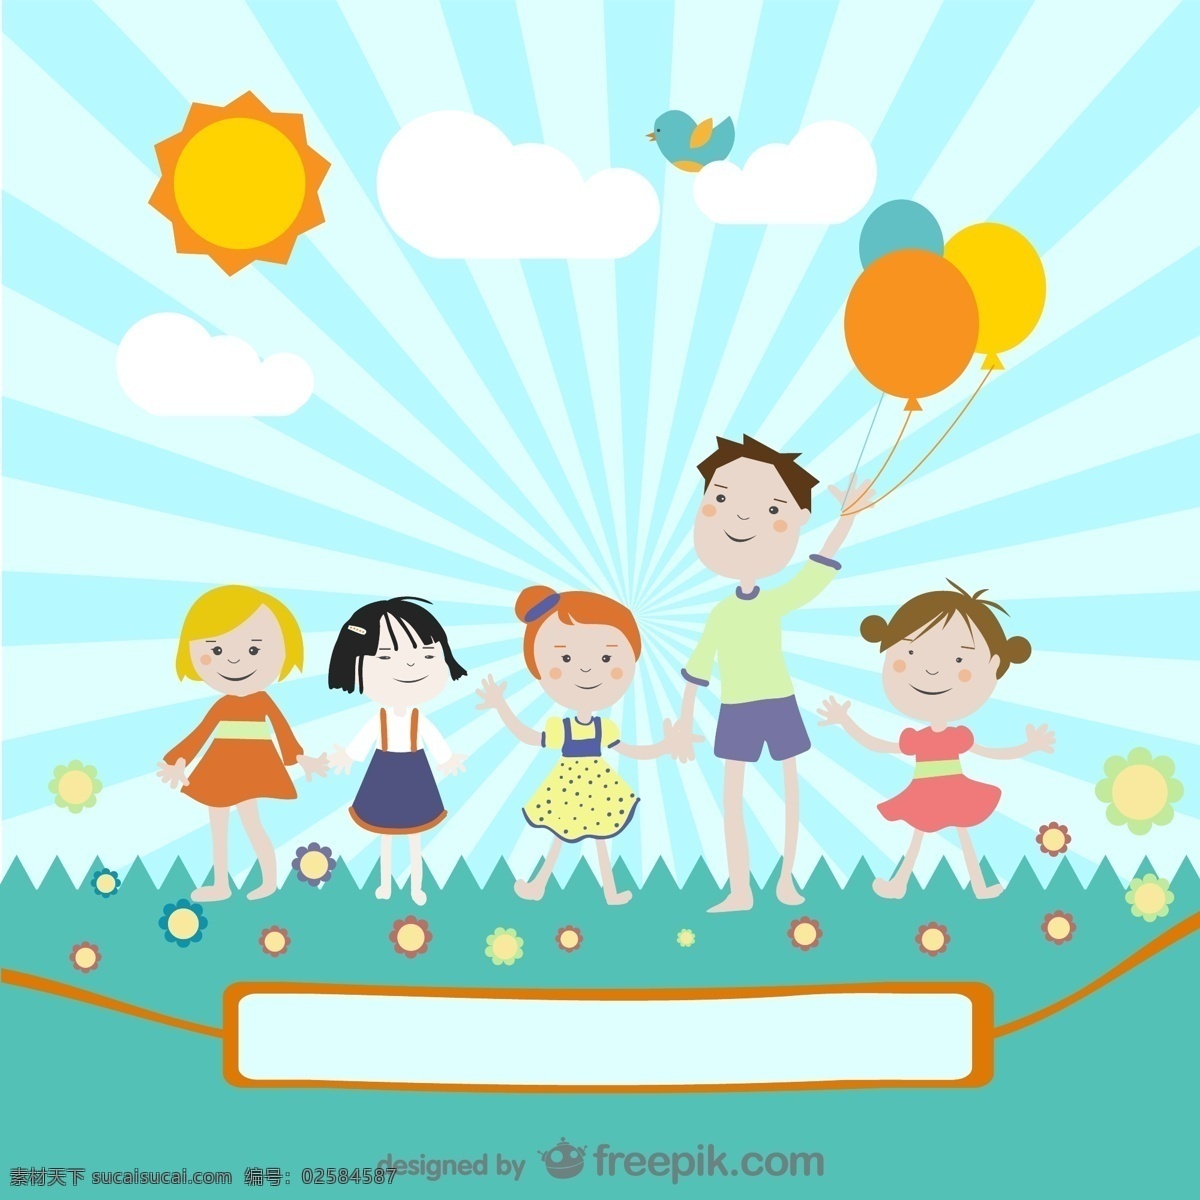 野外活动 人物 卡通儿童 卡通人物 草坪 太阳 气球 青色 天蓝色